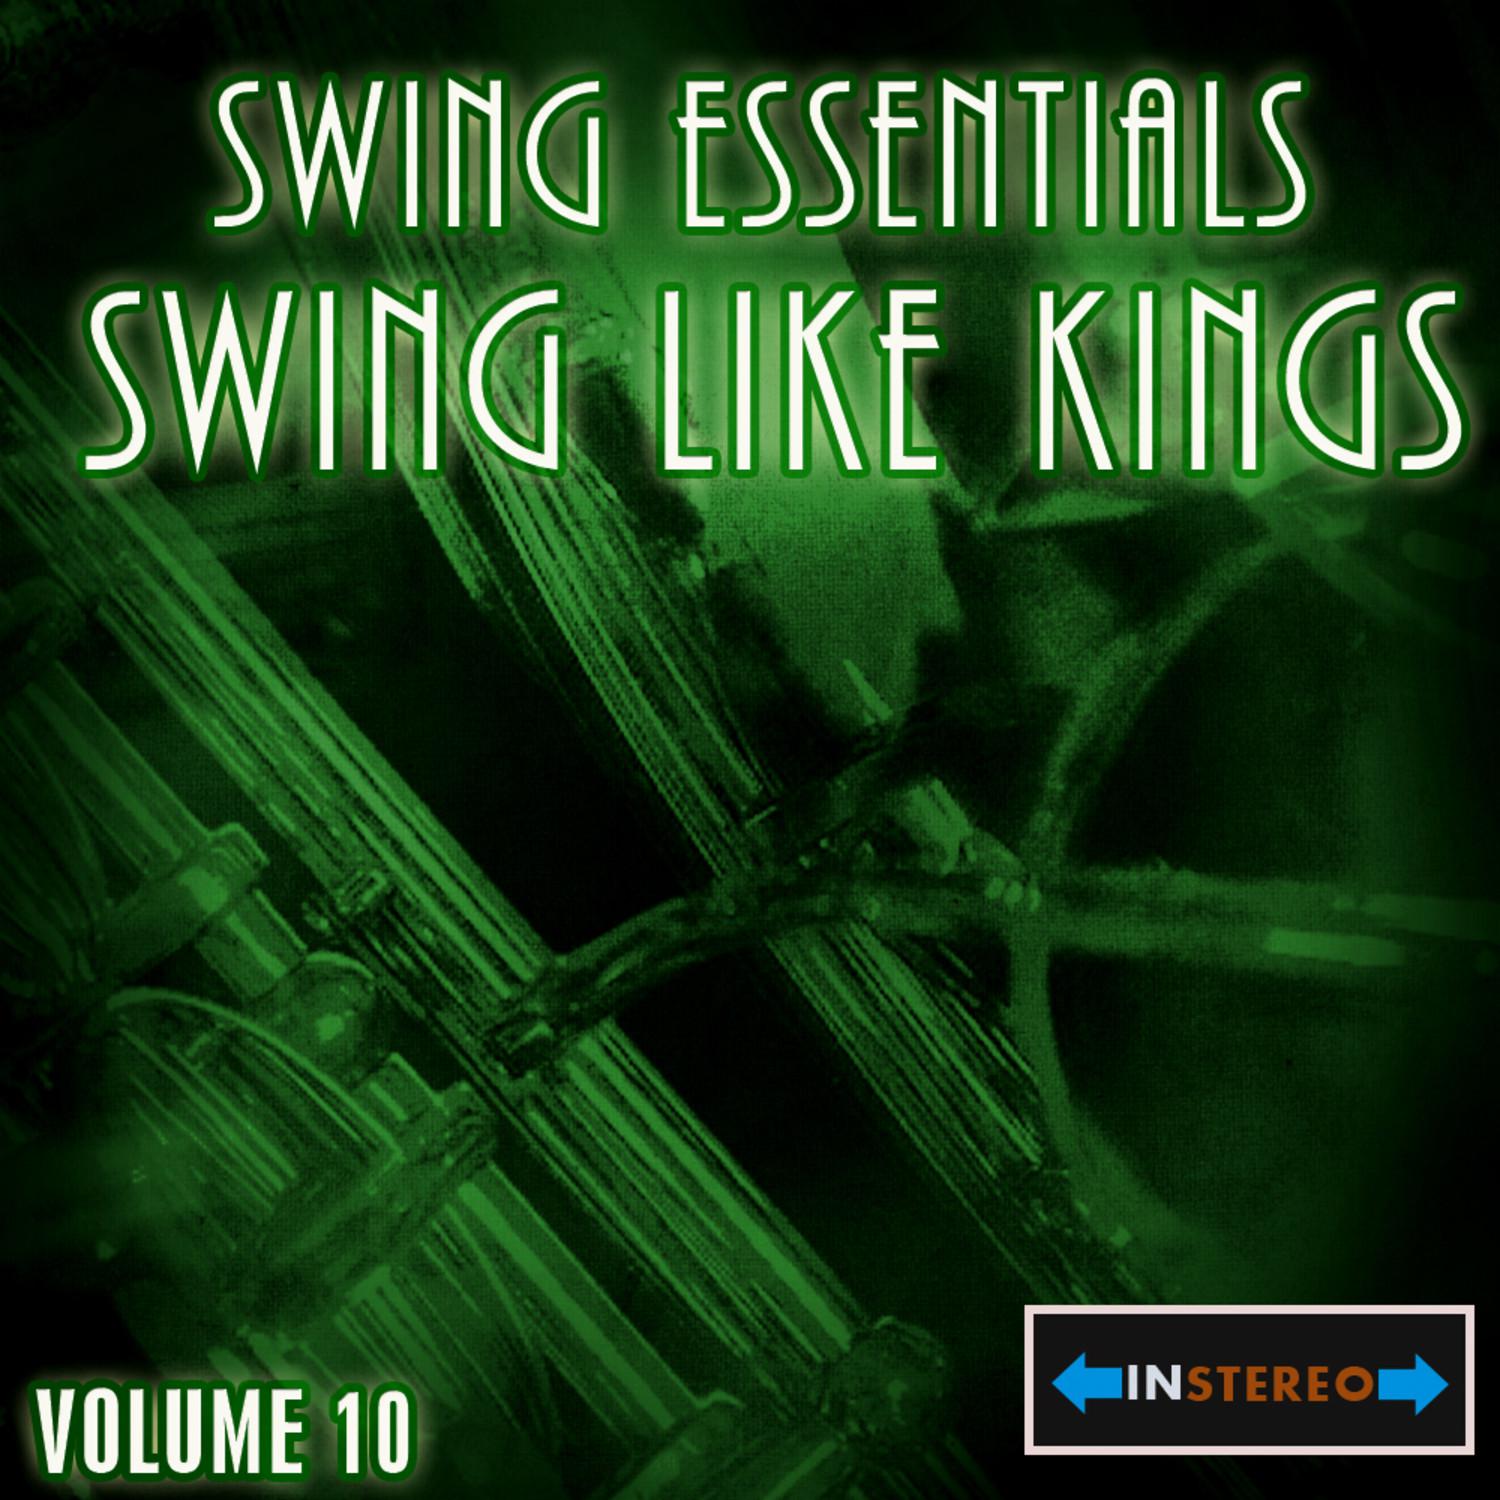 Swing Essentials Vol 10 - Swing Like Kings